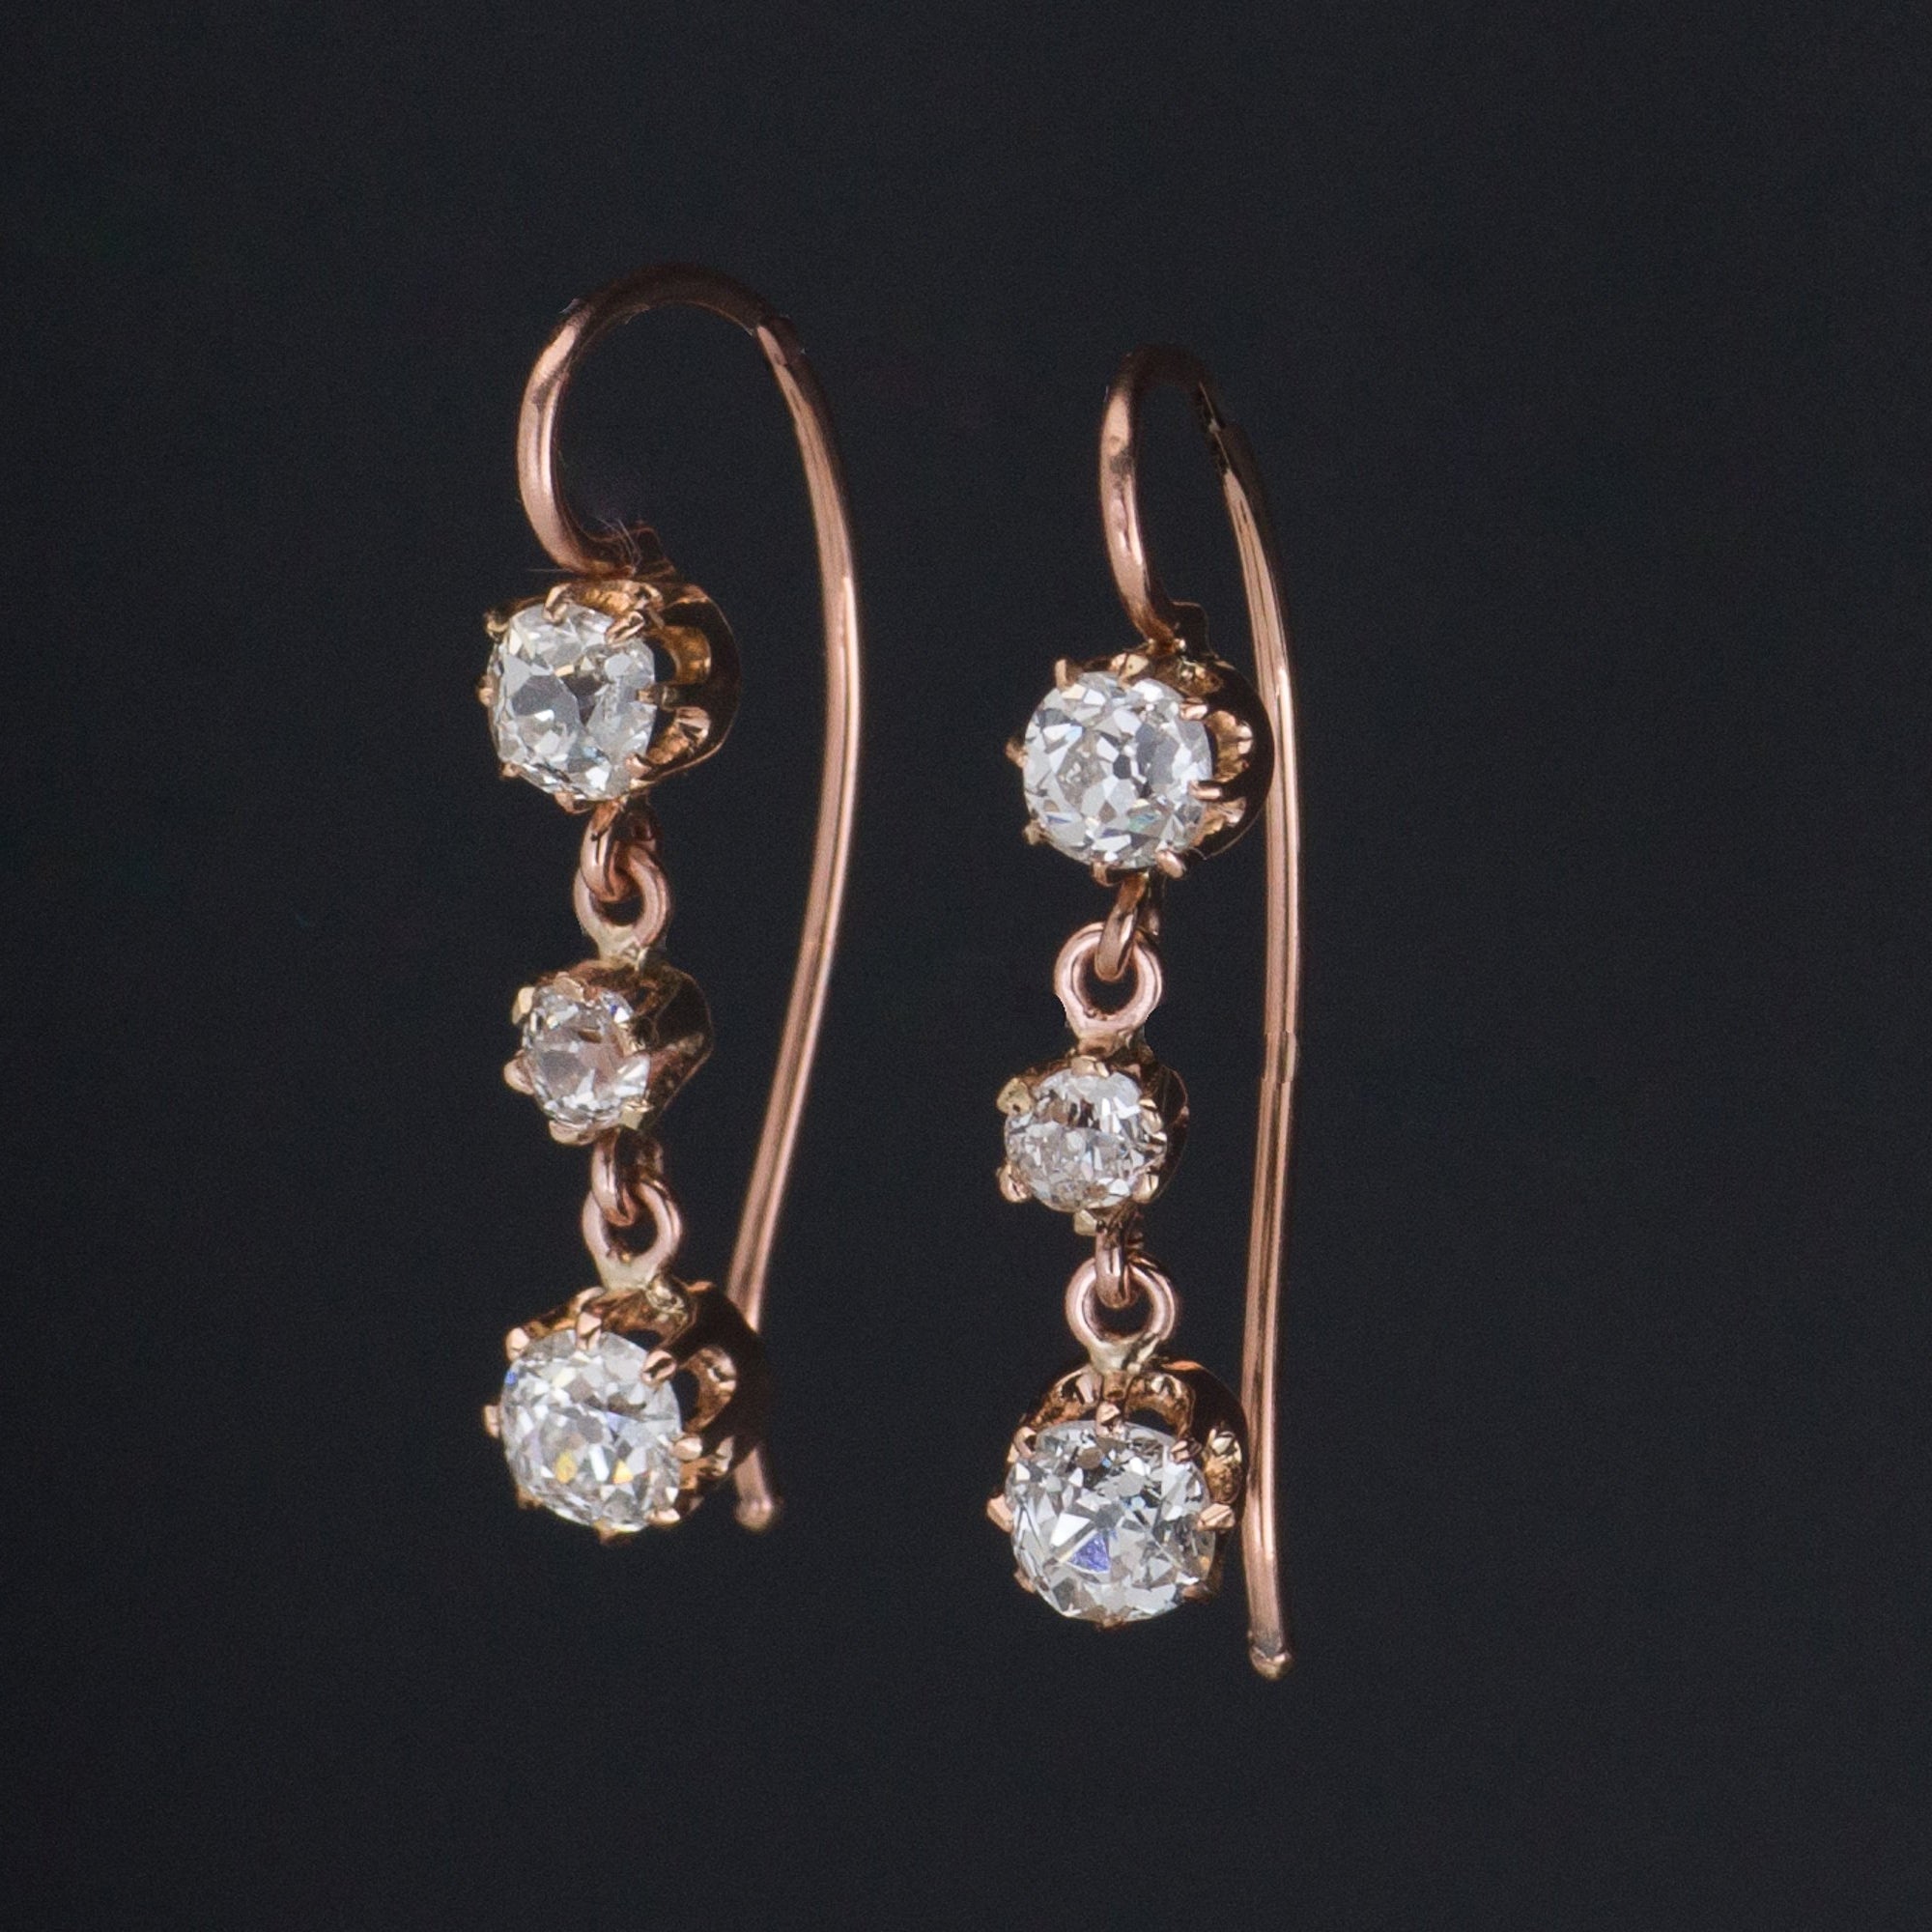 Antique Diamond Earrings | Diamond Earrings | Bridal Earrings | 14k Gold & Mine Cut Diamond Earrings